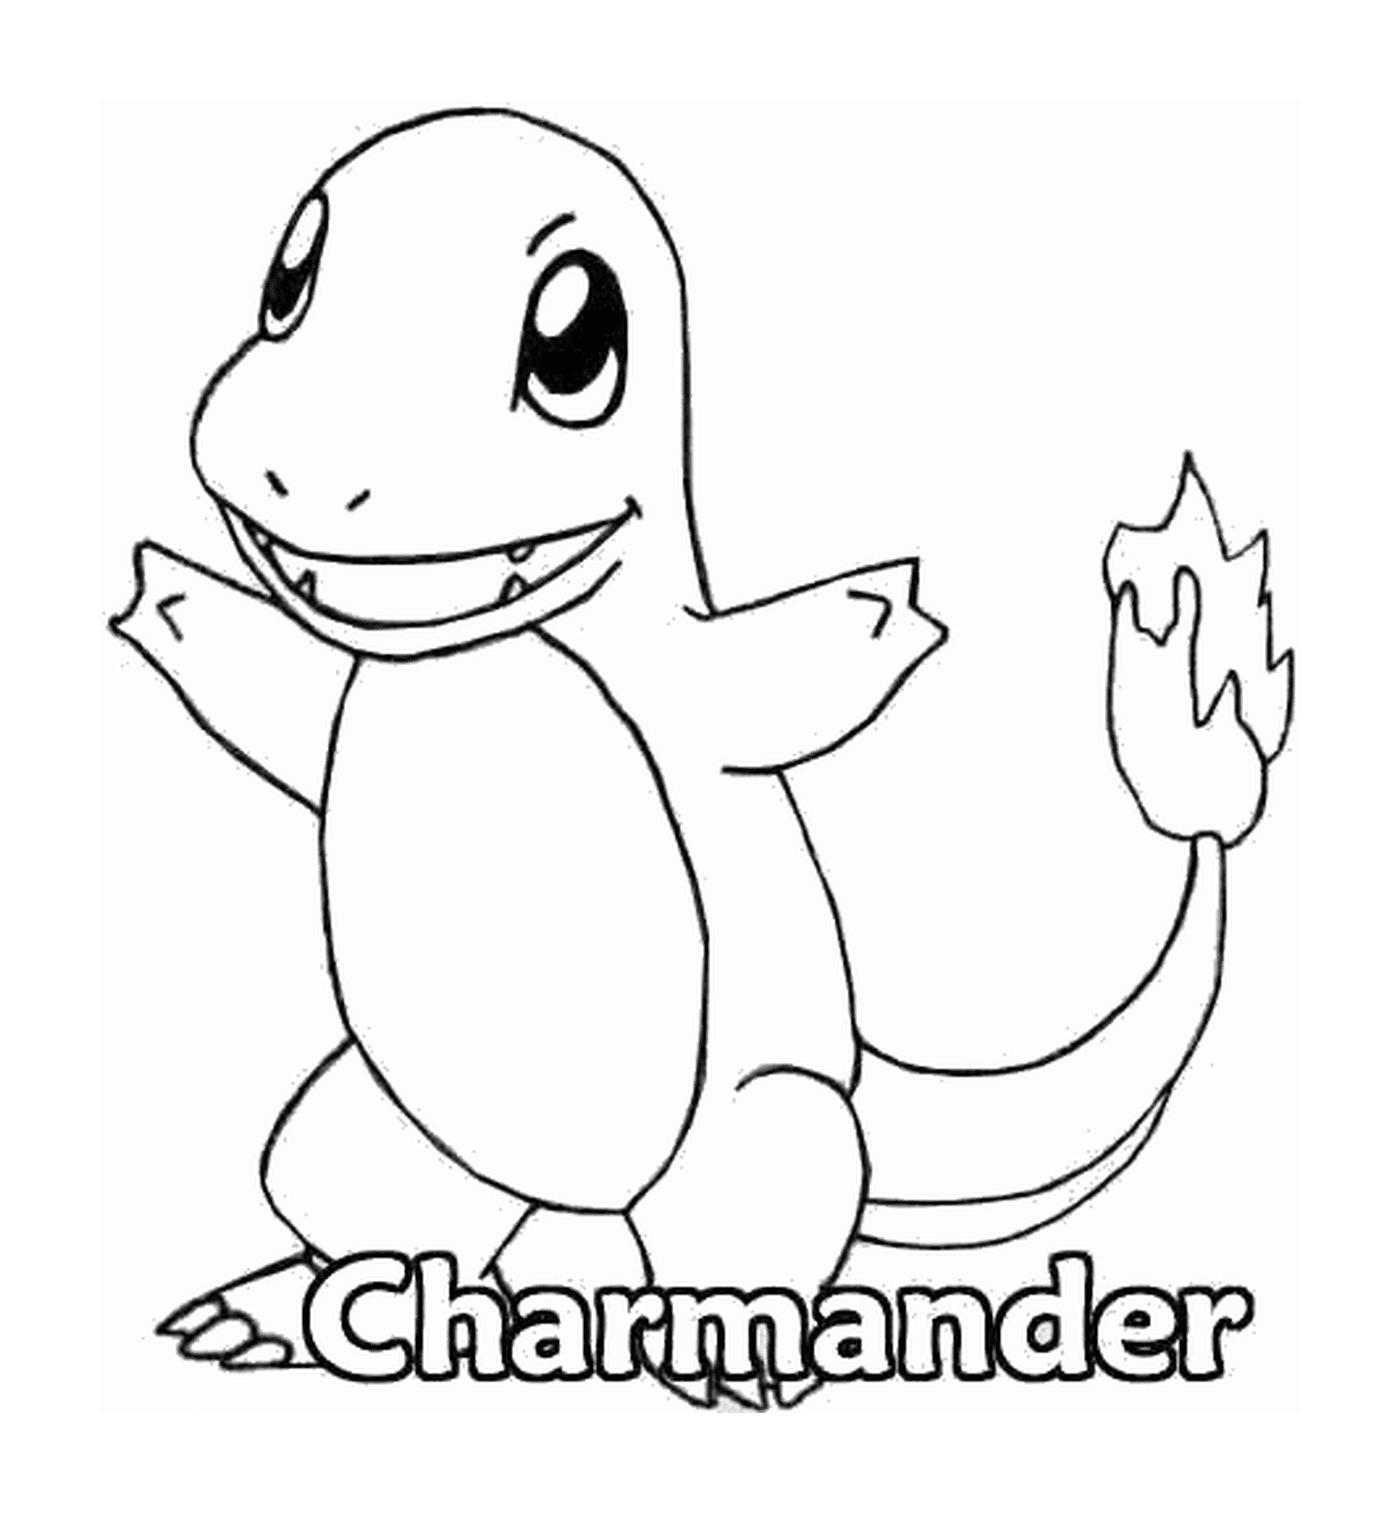  Pokémon CharmanderCity name (optional, probably does not need a translation) 